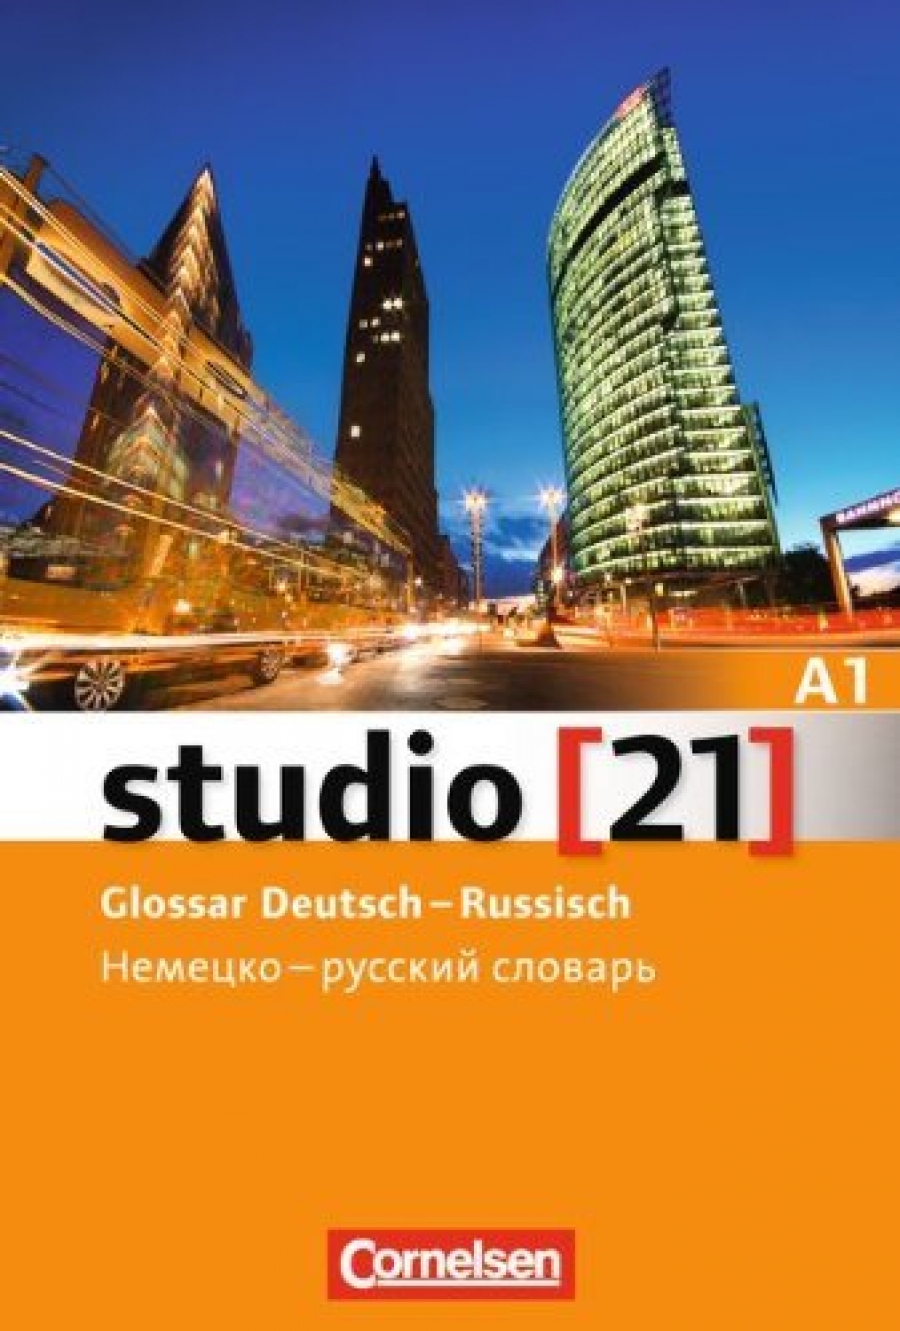 Kuhn Christina, Funk Hermann, Nielsen Laura, Rische Kerstin, hrsg. von Funk Hermann studio 21 - A1 Glossar Deutsch-Russisch 